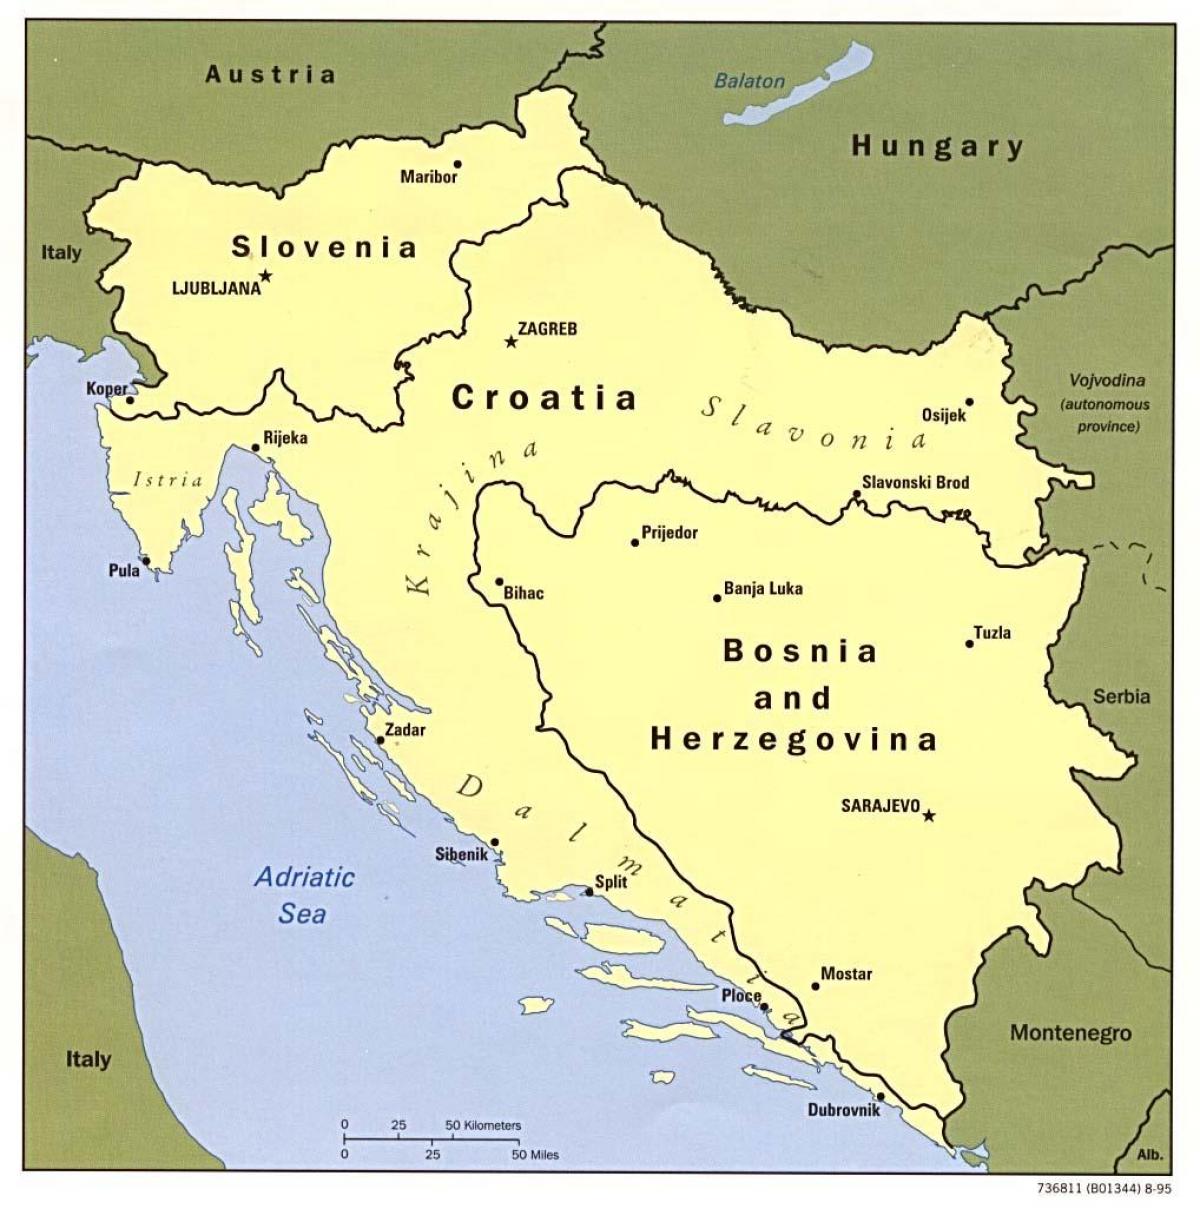 Karte von Bosnien und Herzegowina und den umliegenden Ländern